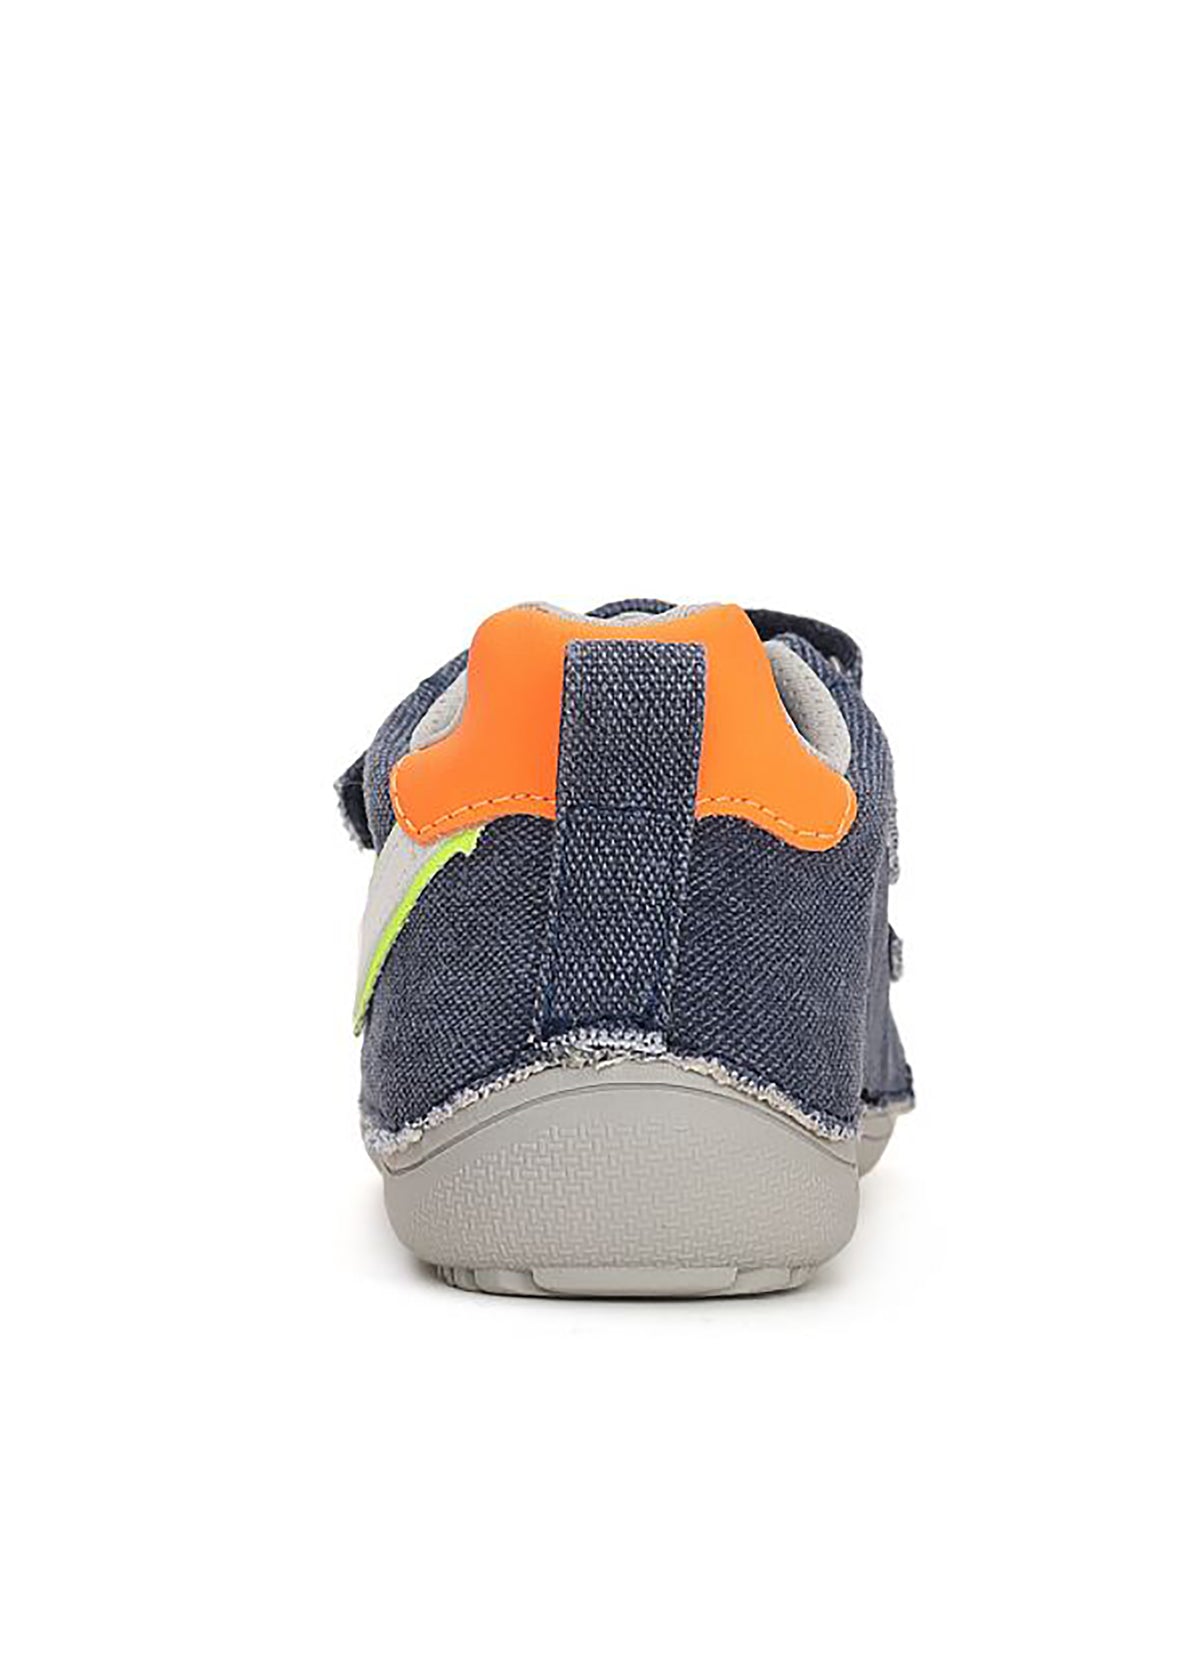 Barfotasneakers för barn - Denimblå canvas, orange-silver blixt